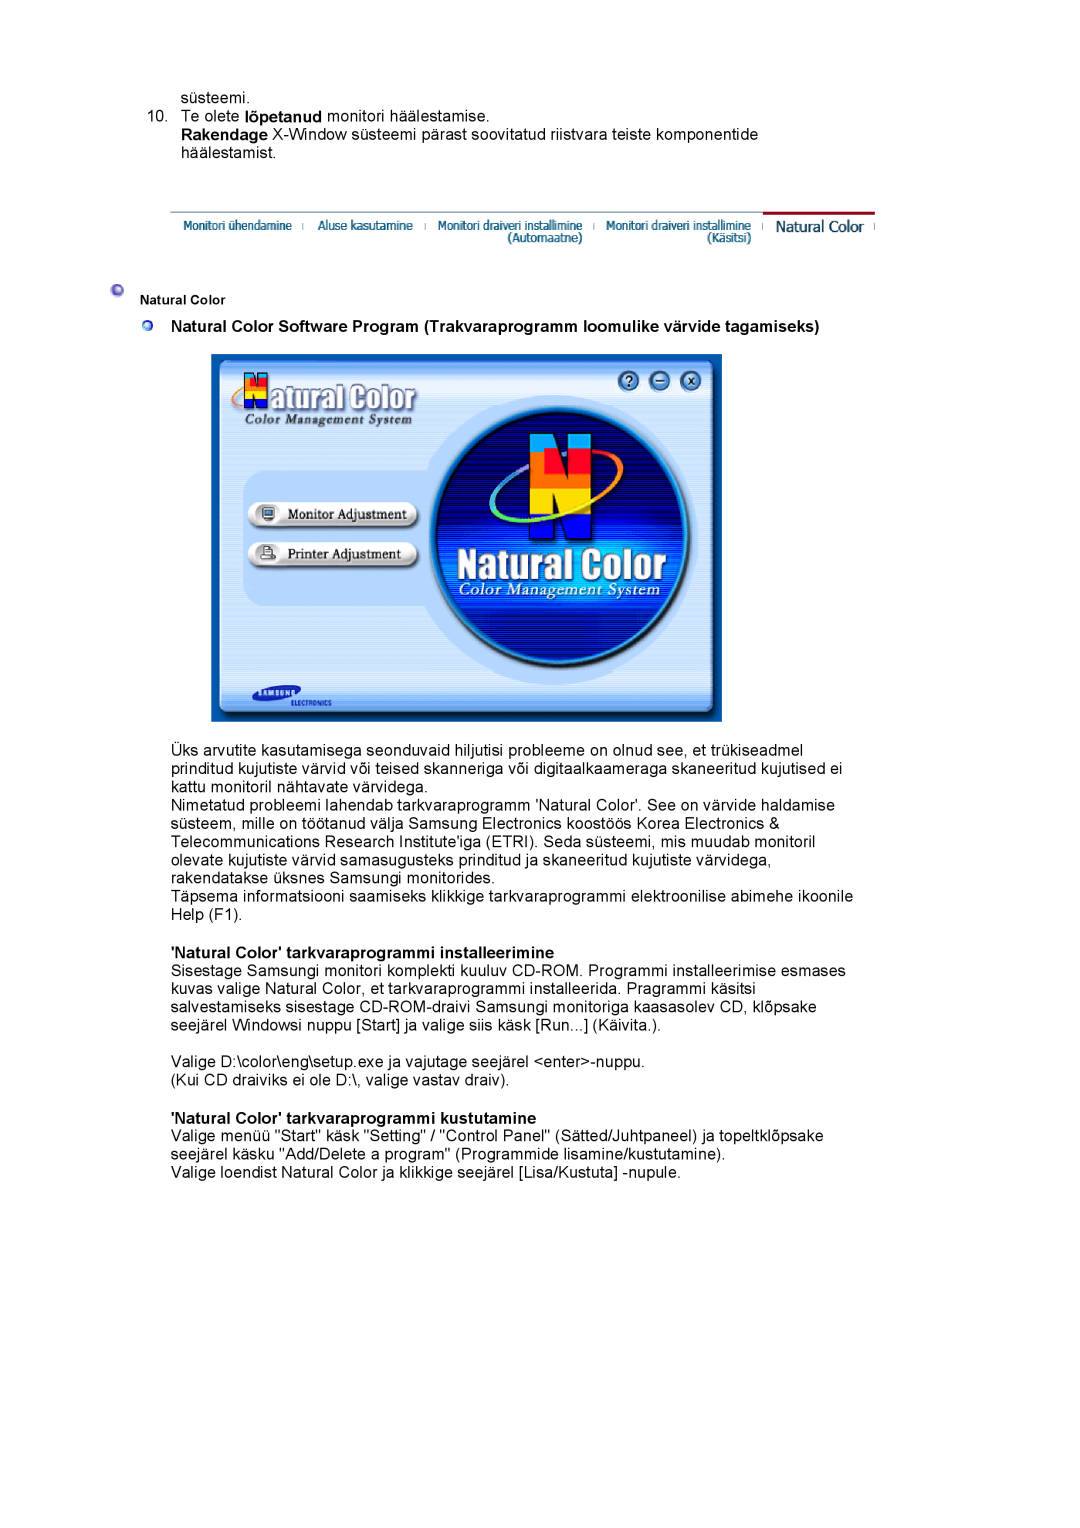 Samsung LS17MJVKS/EDC manual Natural Color tarkvaraprogrammi installeerimine, Natural Color tarkvaraprogrammi kustutamine 